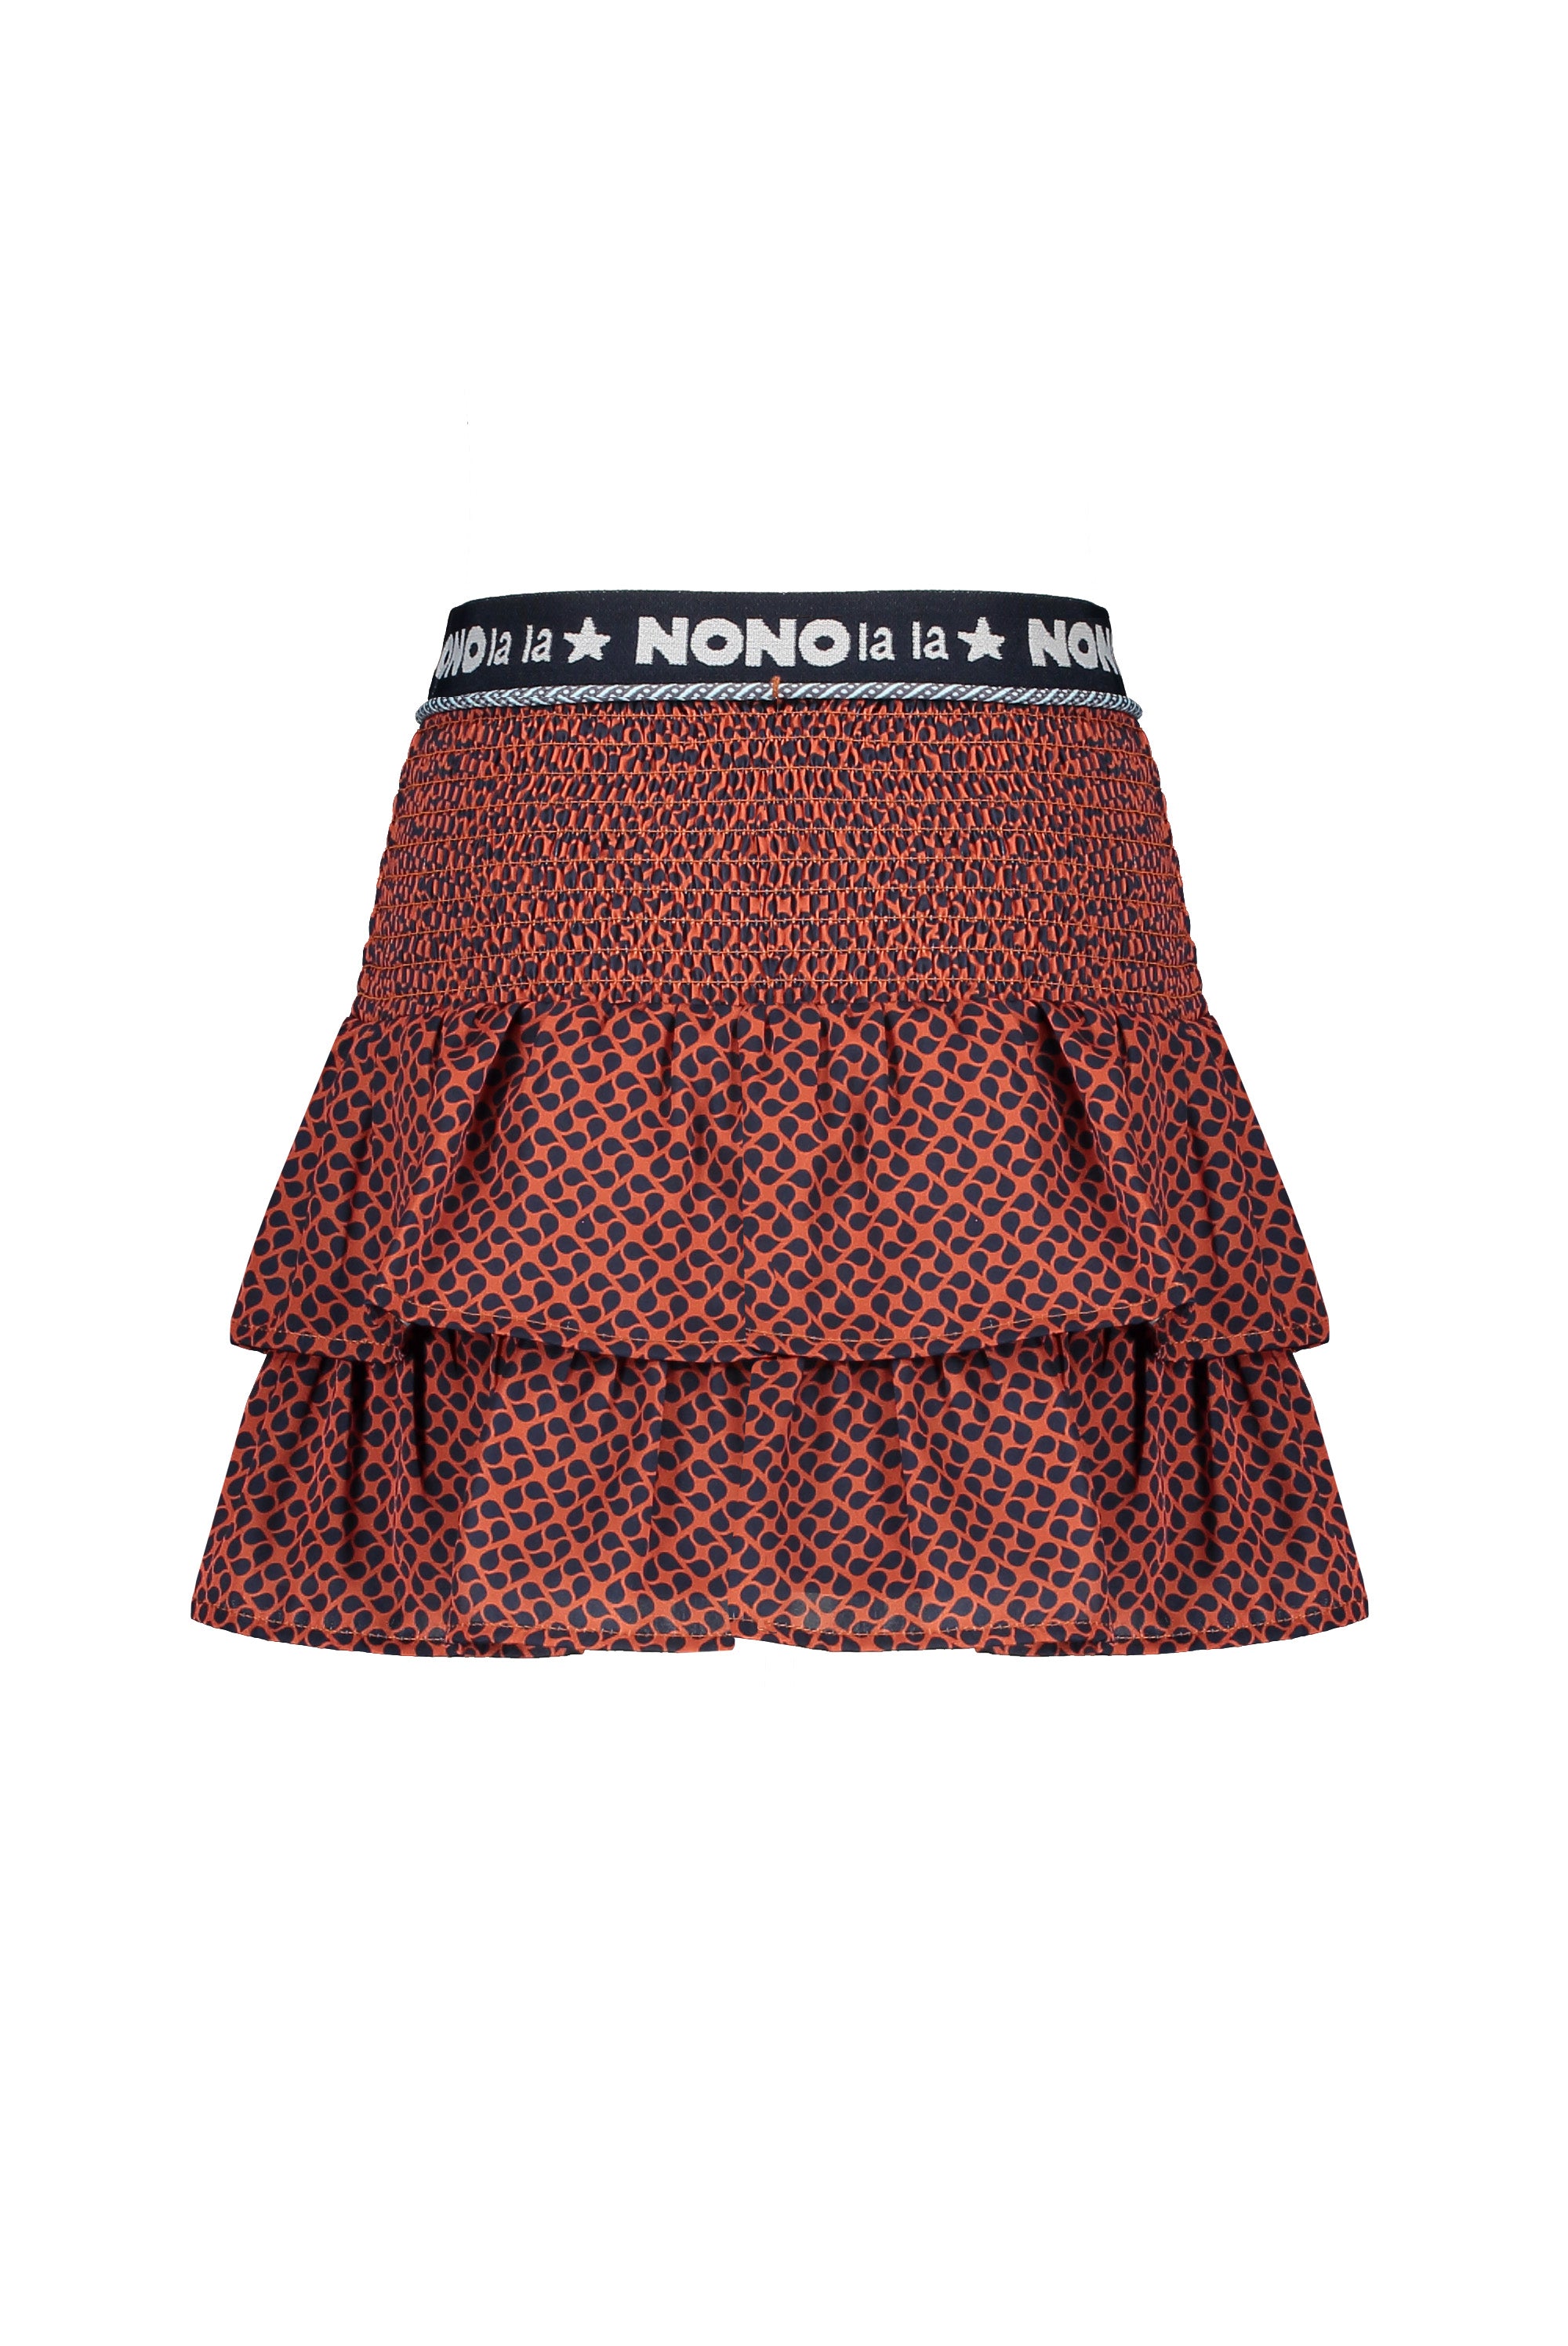 NoNo Norah 2 layered skirt + smocked waist